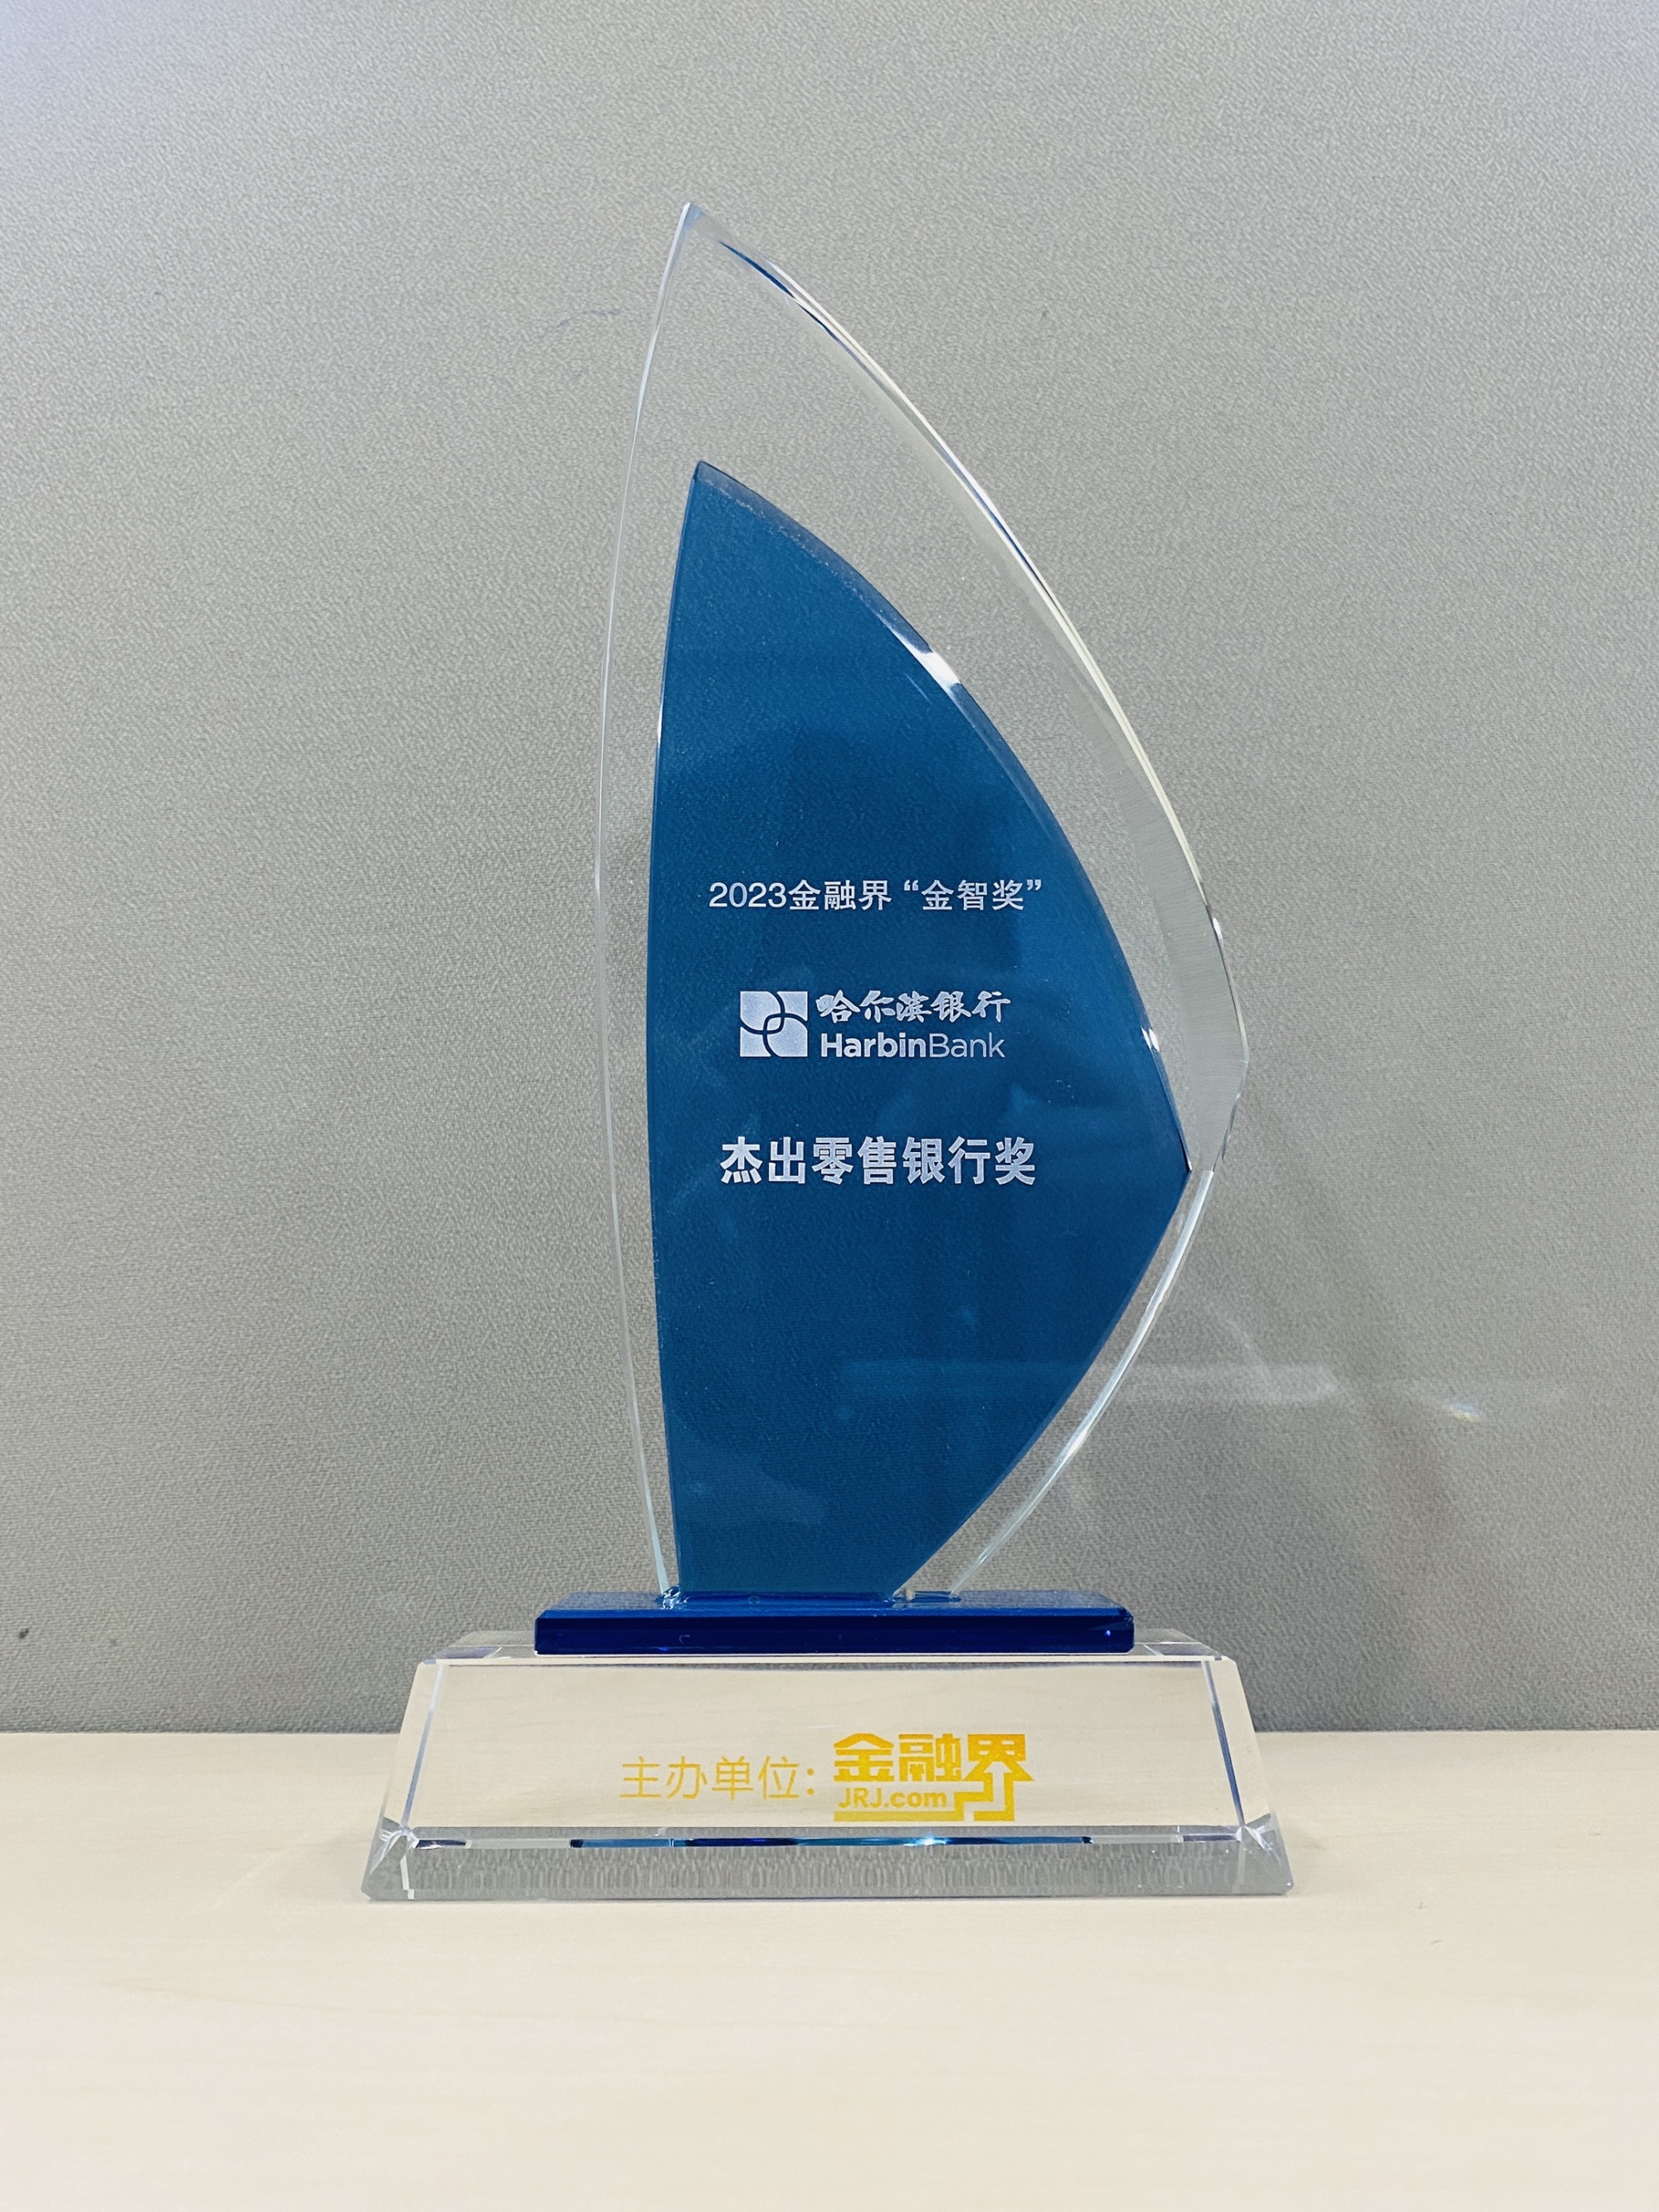 哈尔滨银行荣膺第十二届金智奖“超卓零售银行奖”